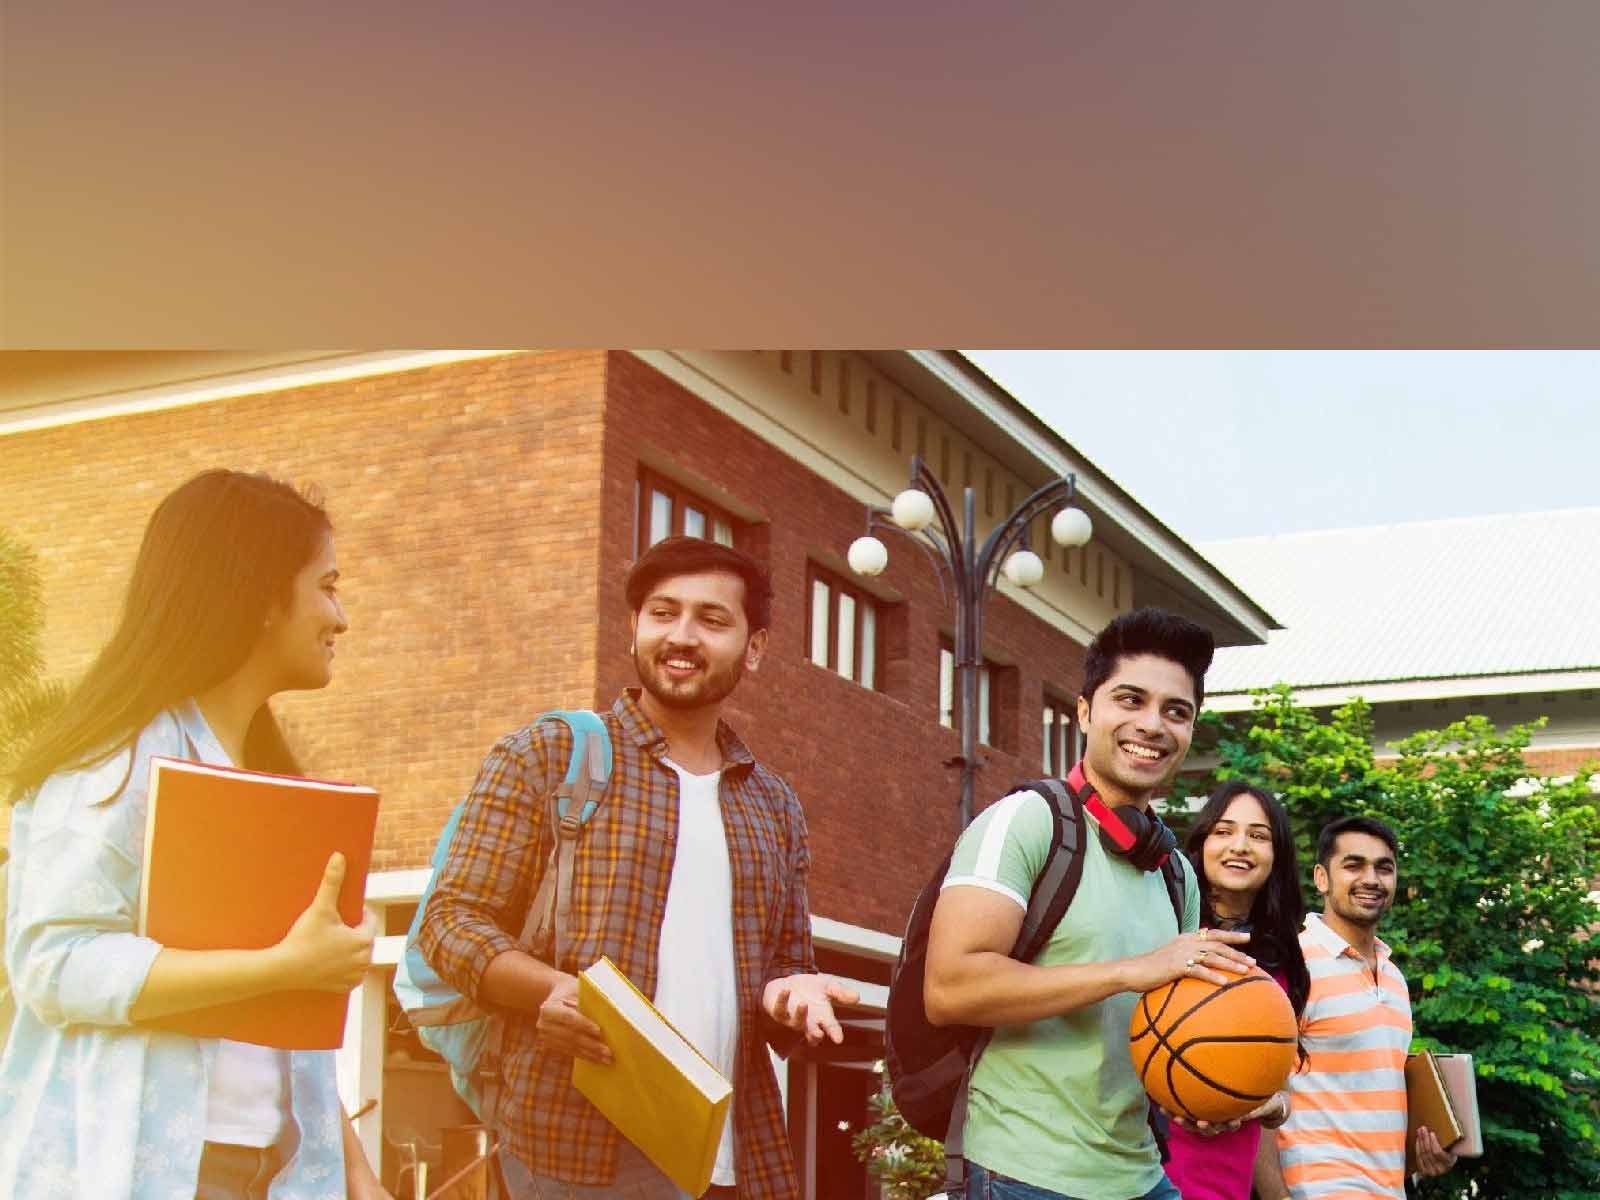 College Admission 2022: ਹੁਣ ਵਿਦਿਆਰਥੀ ਕਰ ਸਕਣਗੇ ਇੱਕੋ ਸਮੇਂ ਦੋ ਡਿਗਰੀਆਂ, UGC ਜਾਰੀ ਕਰੇਗਾ ਨਿਯਮ (ਫਾਈਲ ਫੋਟੋ)

